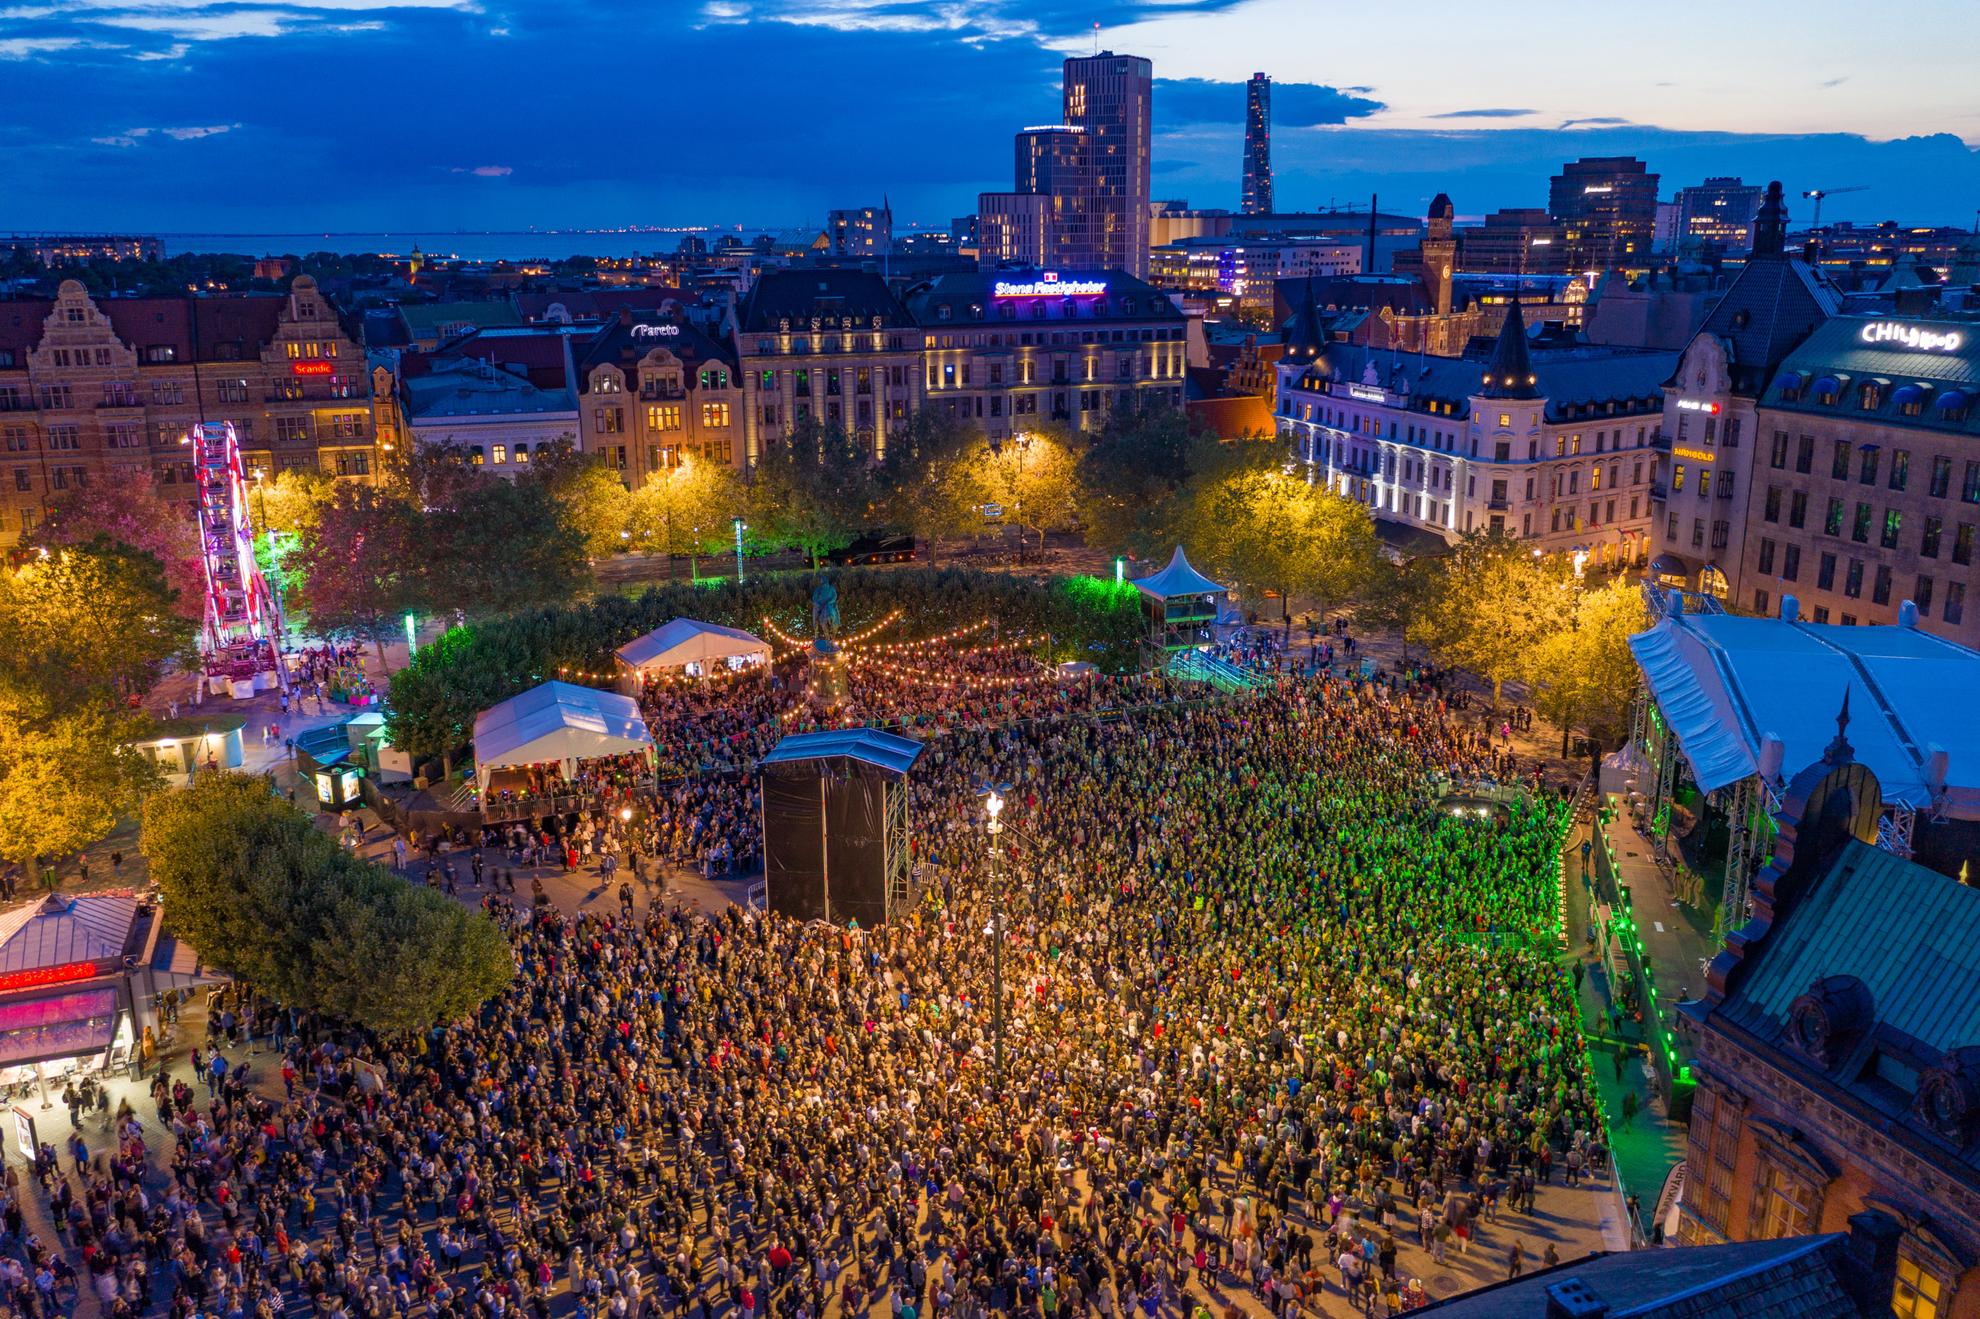 Ein Drohnenbild über dem Malmö Festival am Abend, mit Tausenden von Besuchern vor einer großen Bühne.